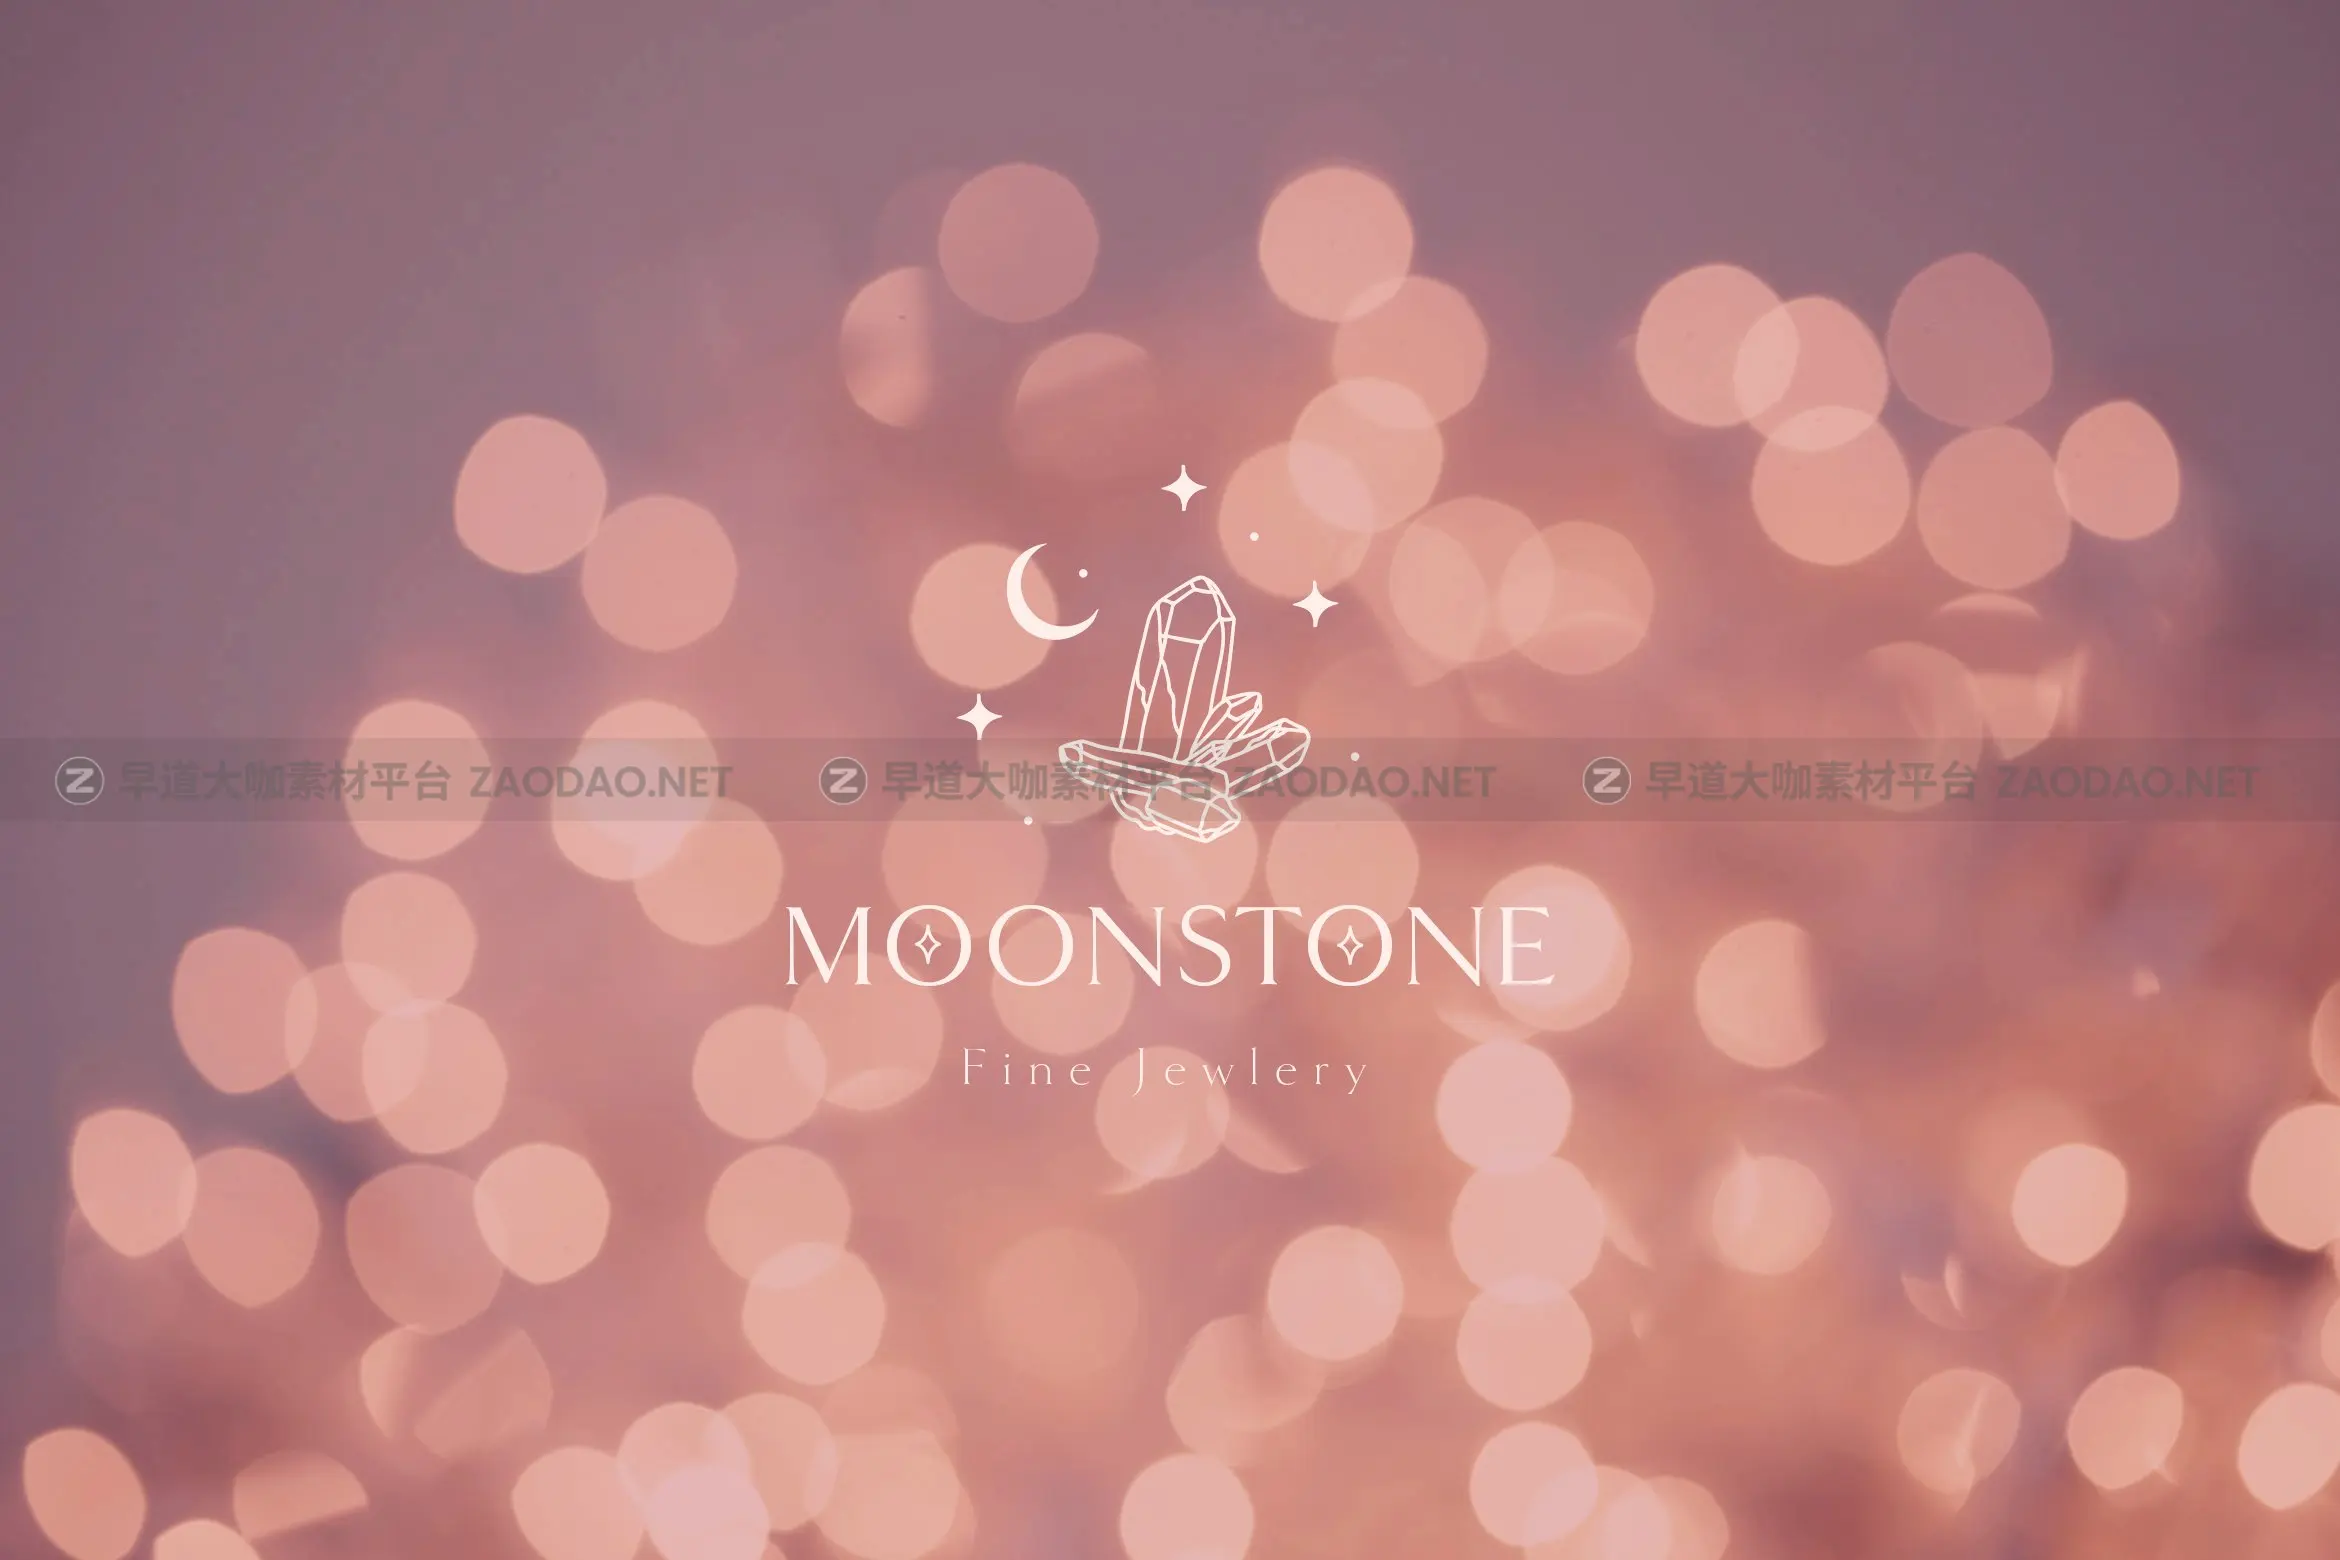 时尚优雅奢华珠宝瑜伽摄影花店徽标Logo设计AI矢量素材 Moon Stone Premade Brand Logo Design插图6